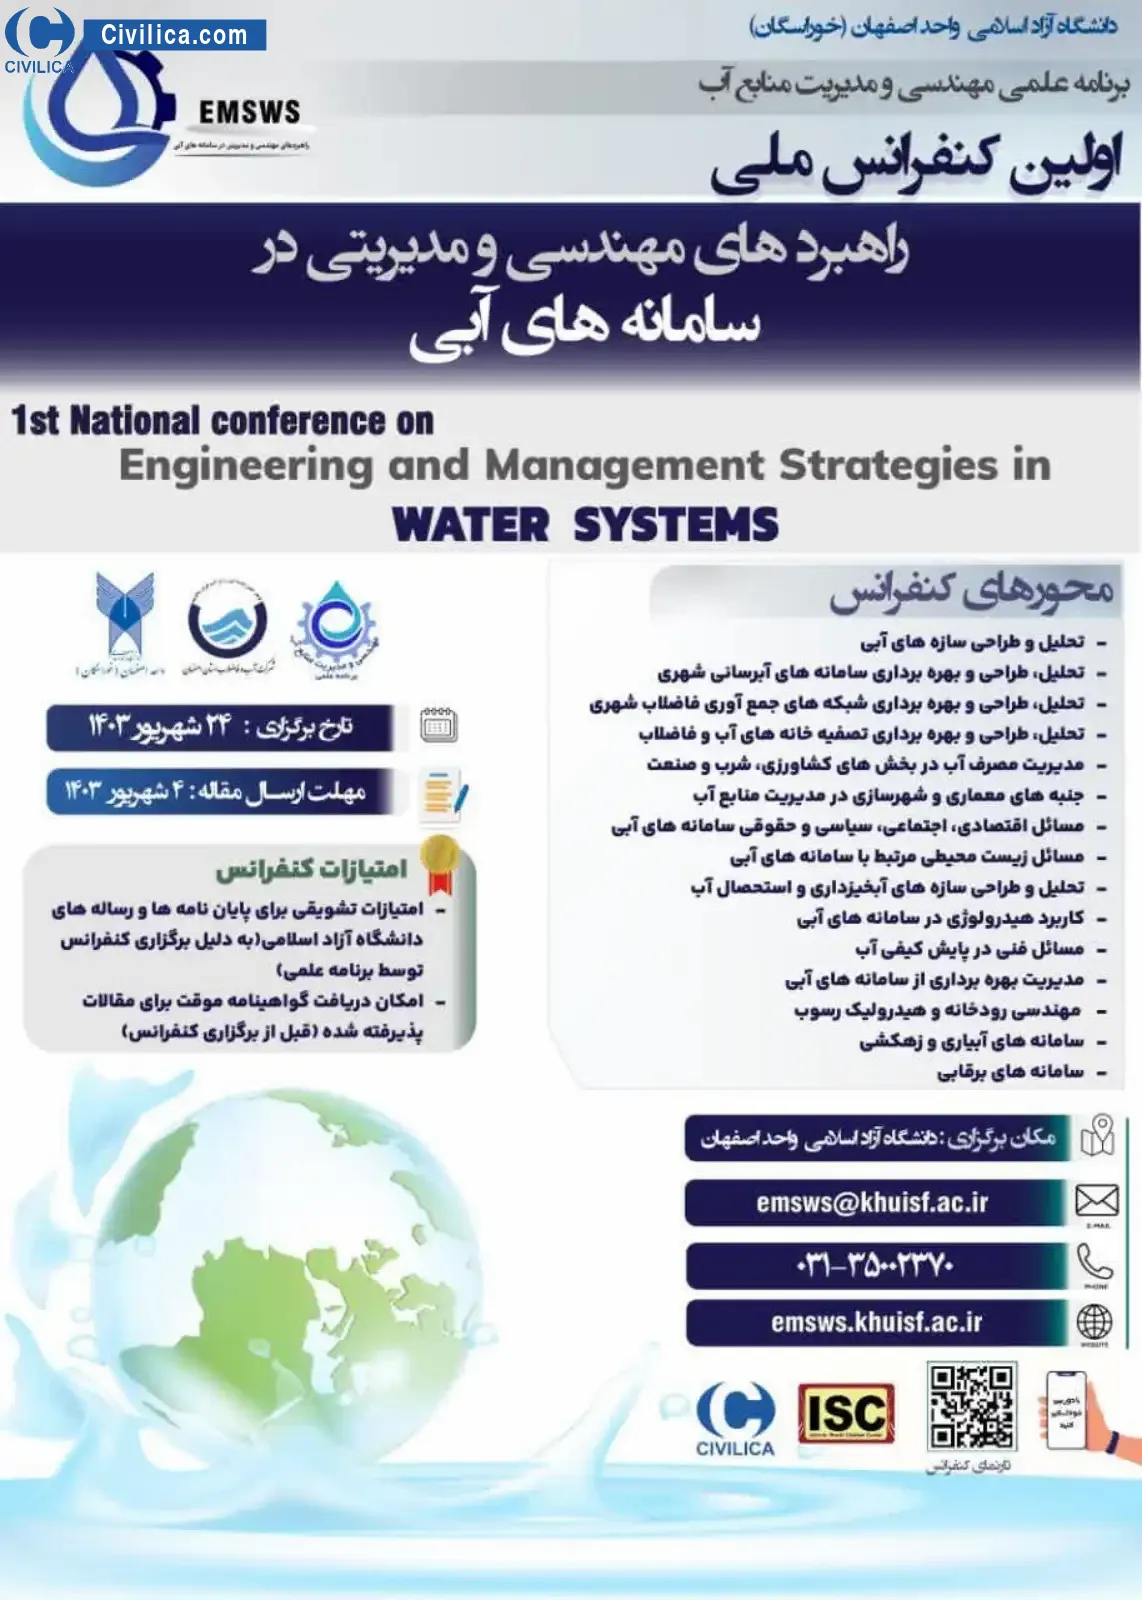 فراخوان مقاله اولین کنفرانس ملی راهبردهای مهندسی و مدیریتی در سامانه های آبی